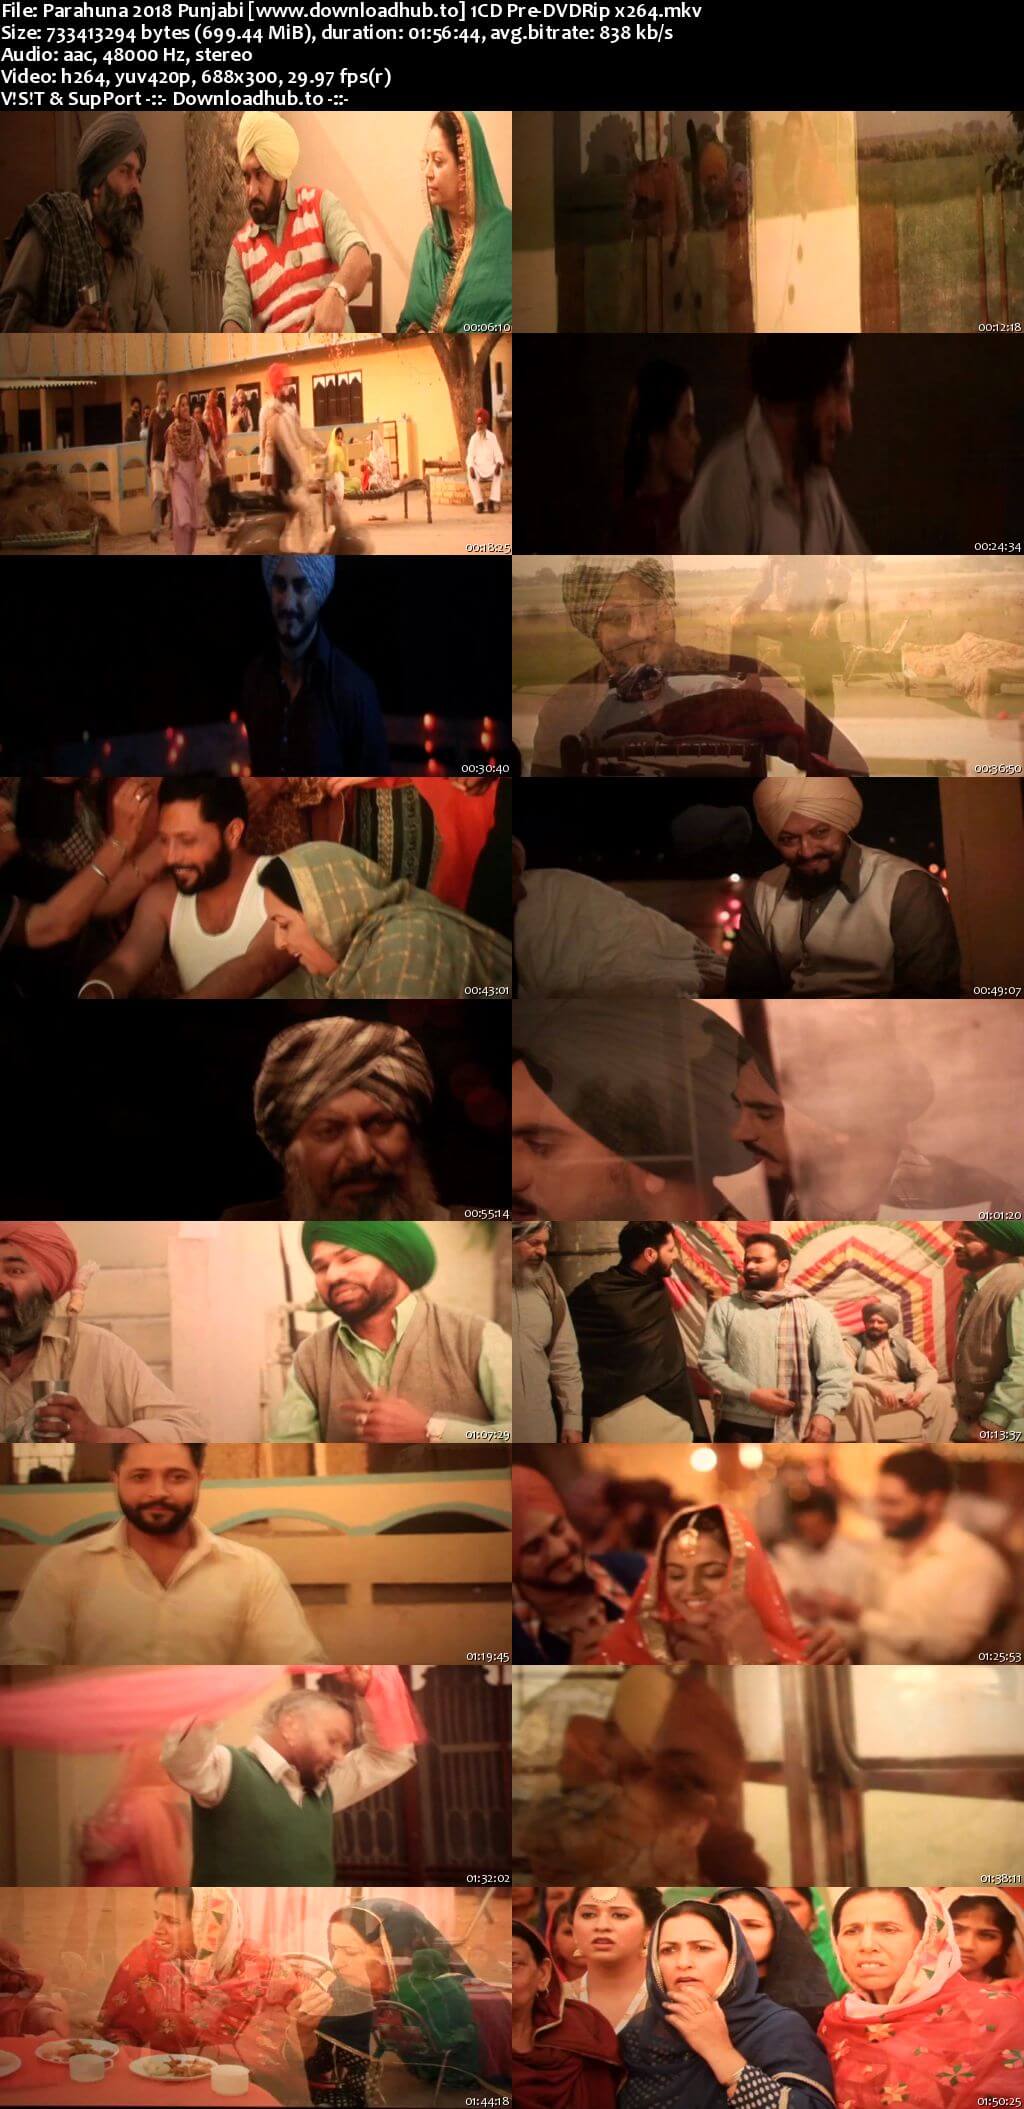 Parahuna 2018 Punjabi 700MB Pre-DVDRip x264